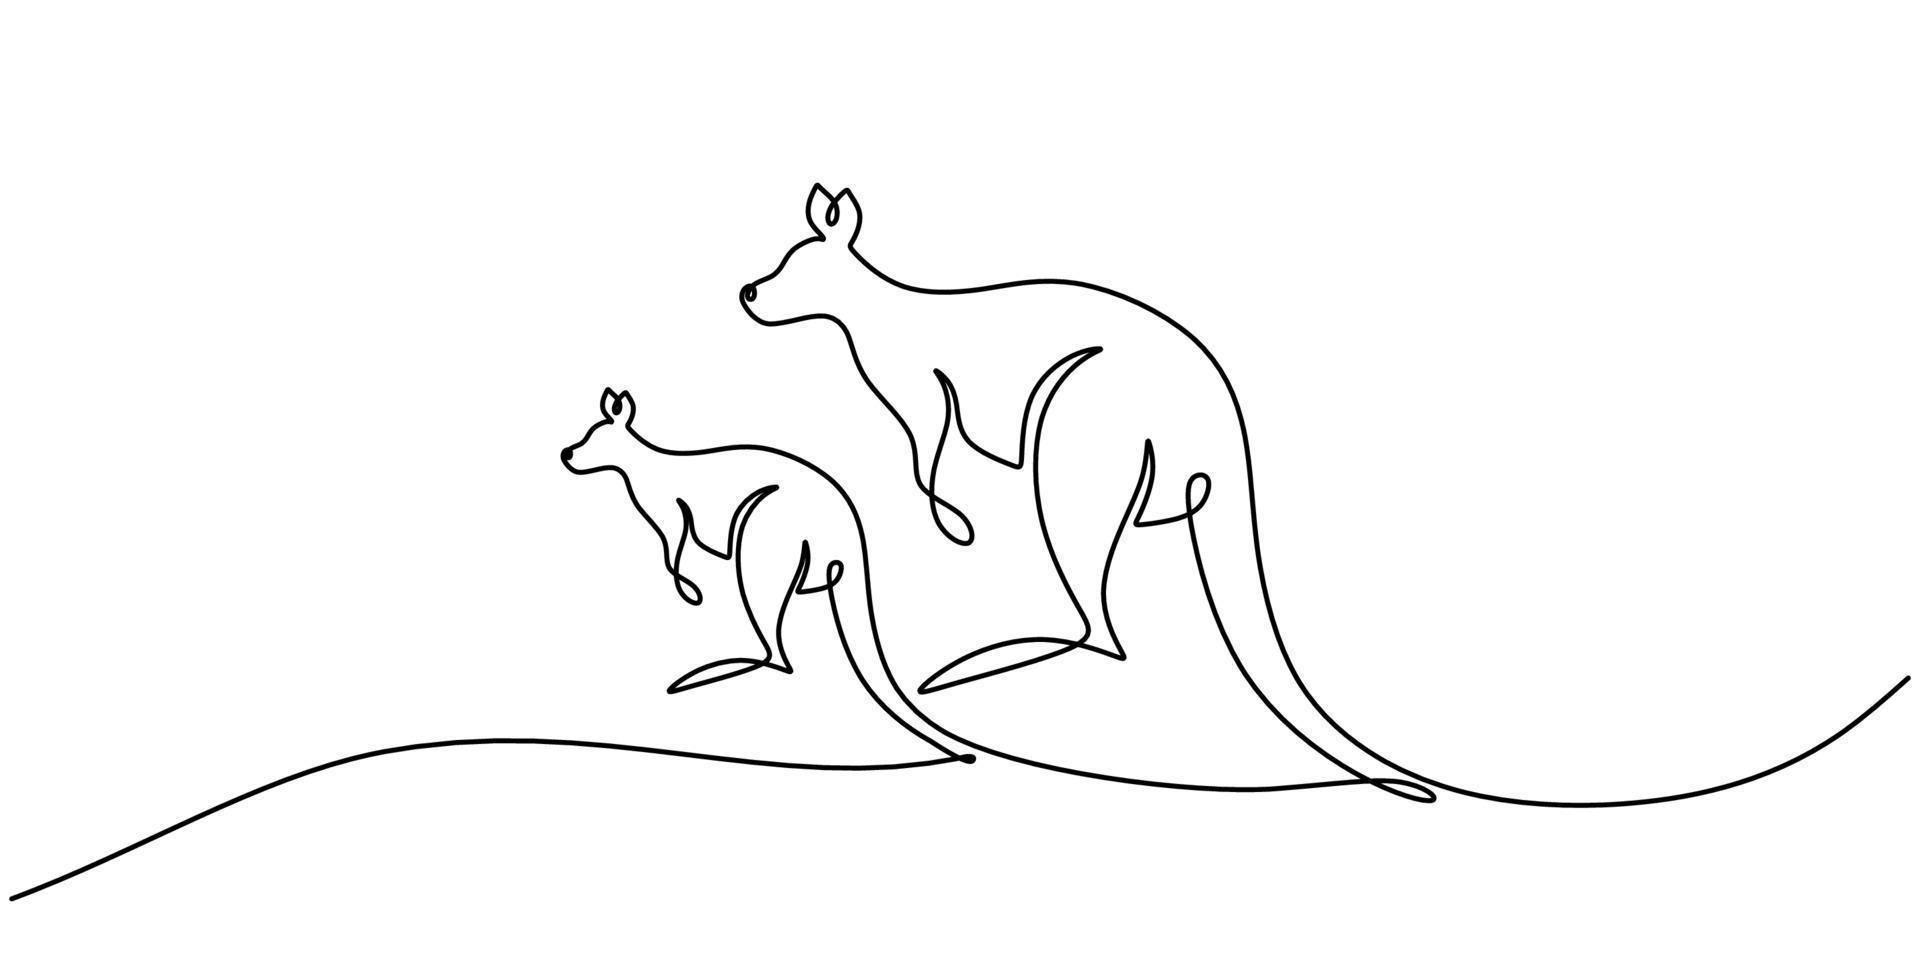 durchgehend eine einzige Reihe von zwei Kängurus, die für den Australien-Tag stehen vektor